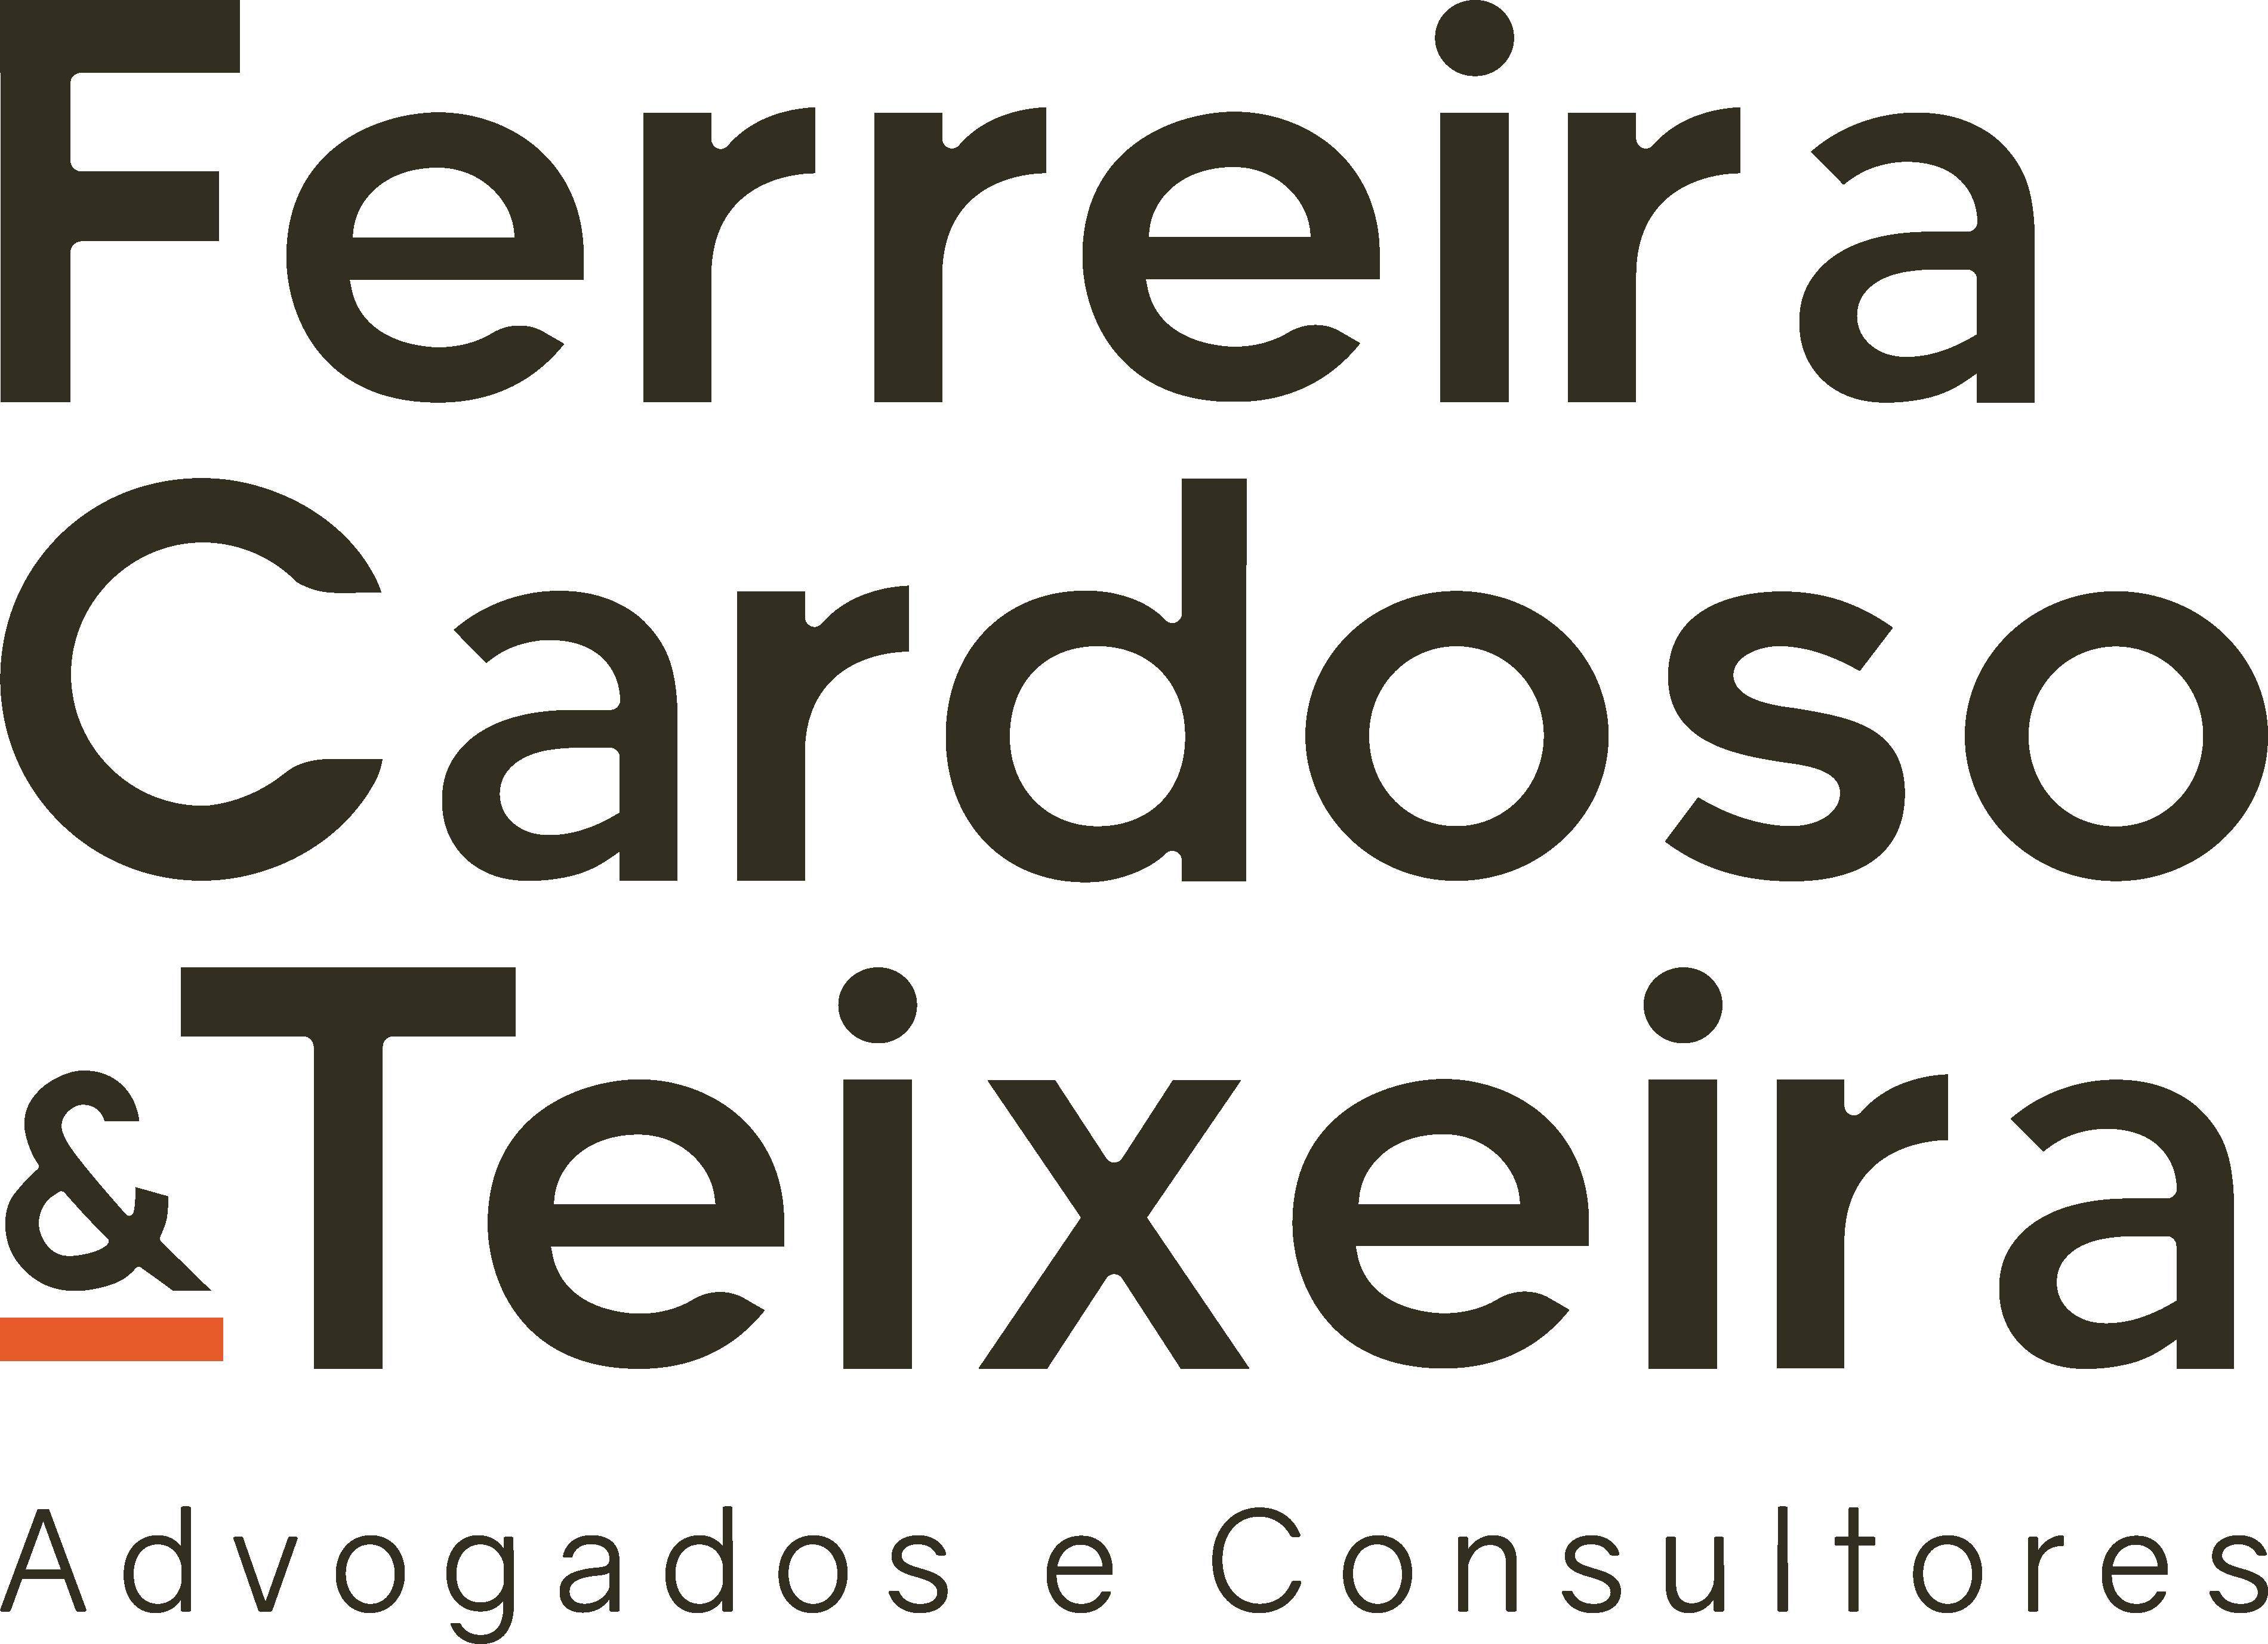 Ferreira Cardoso & Teixeira